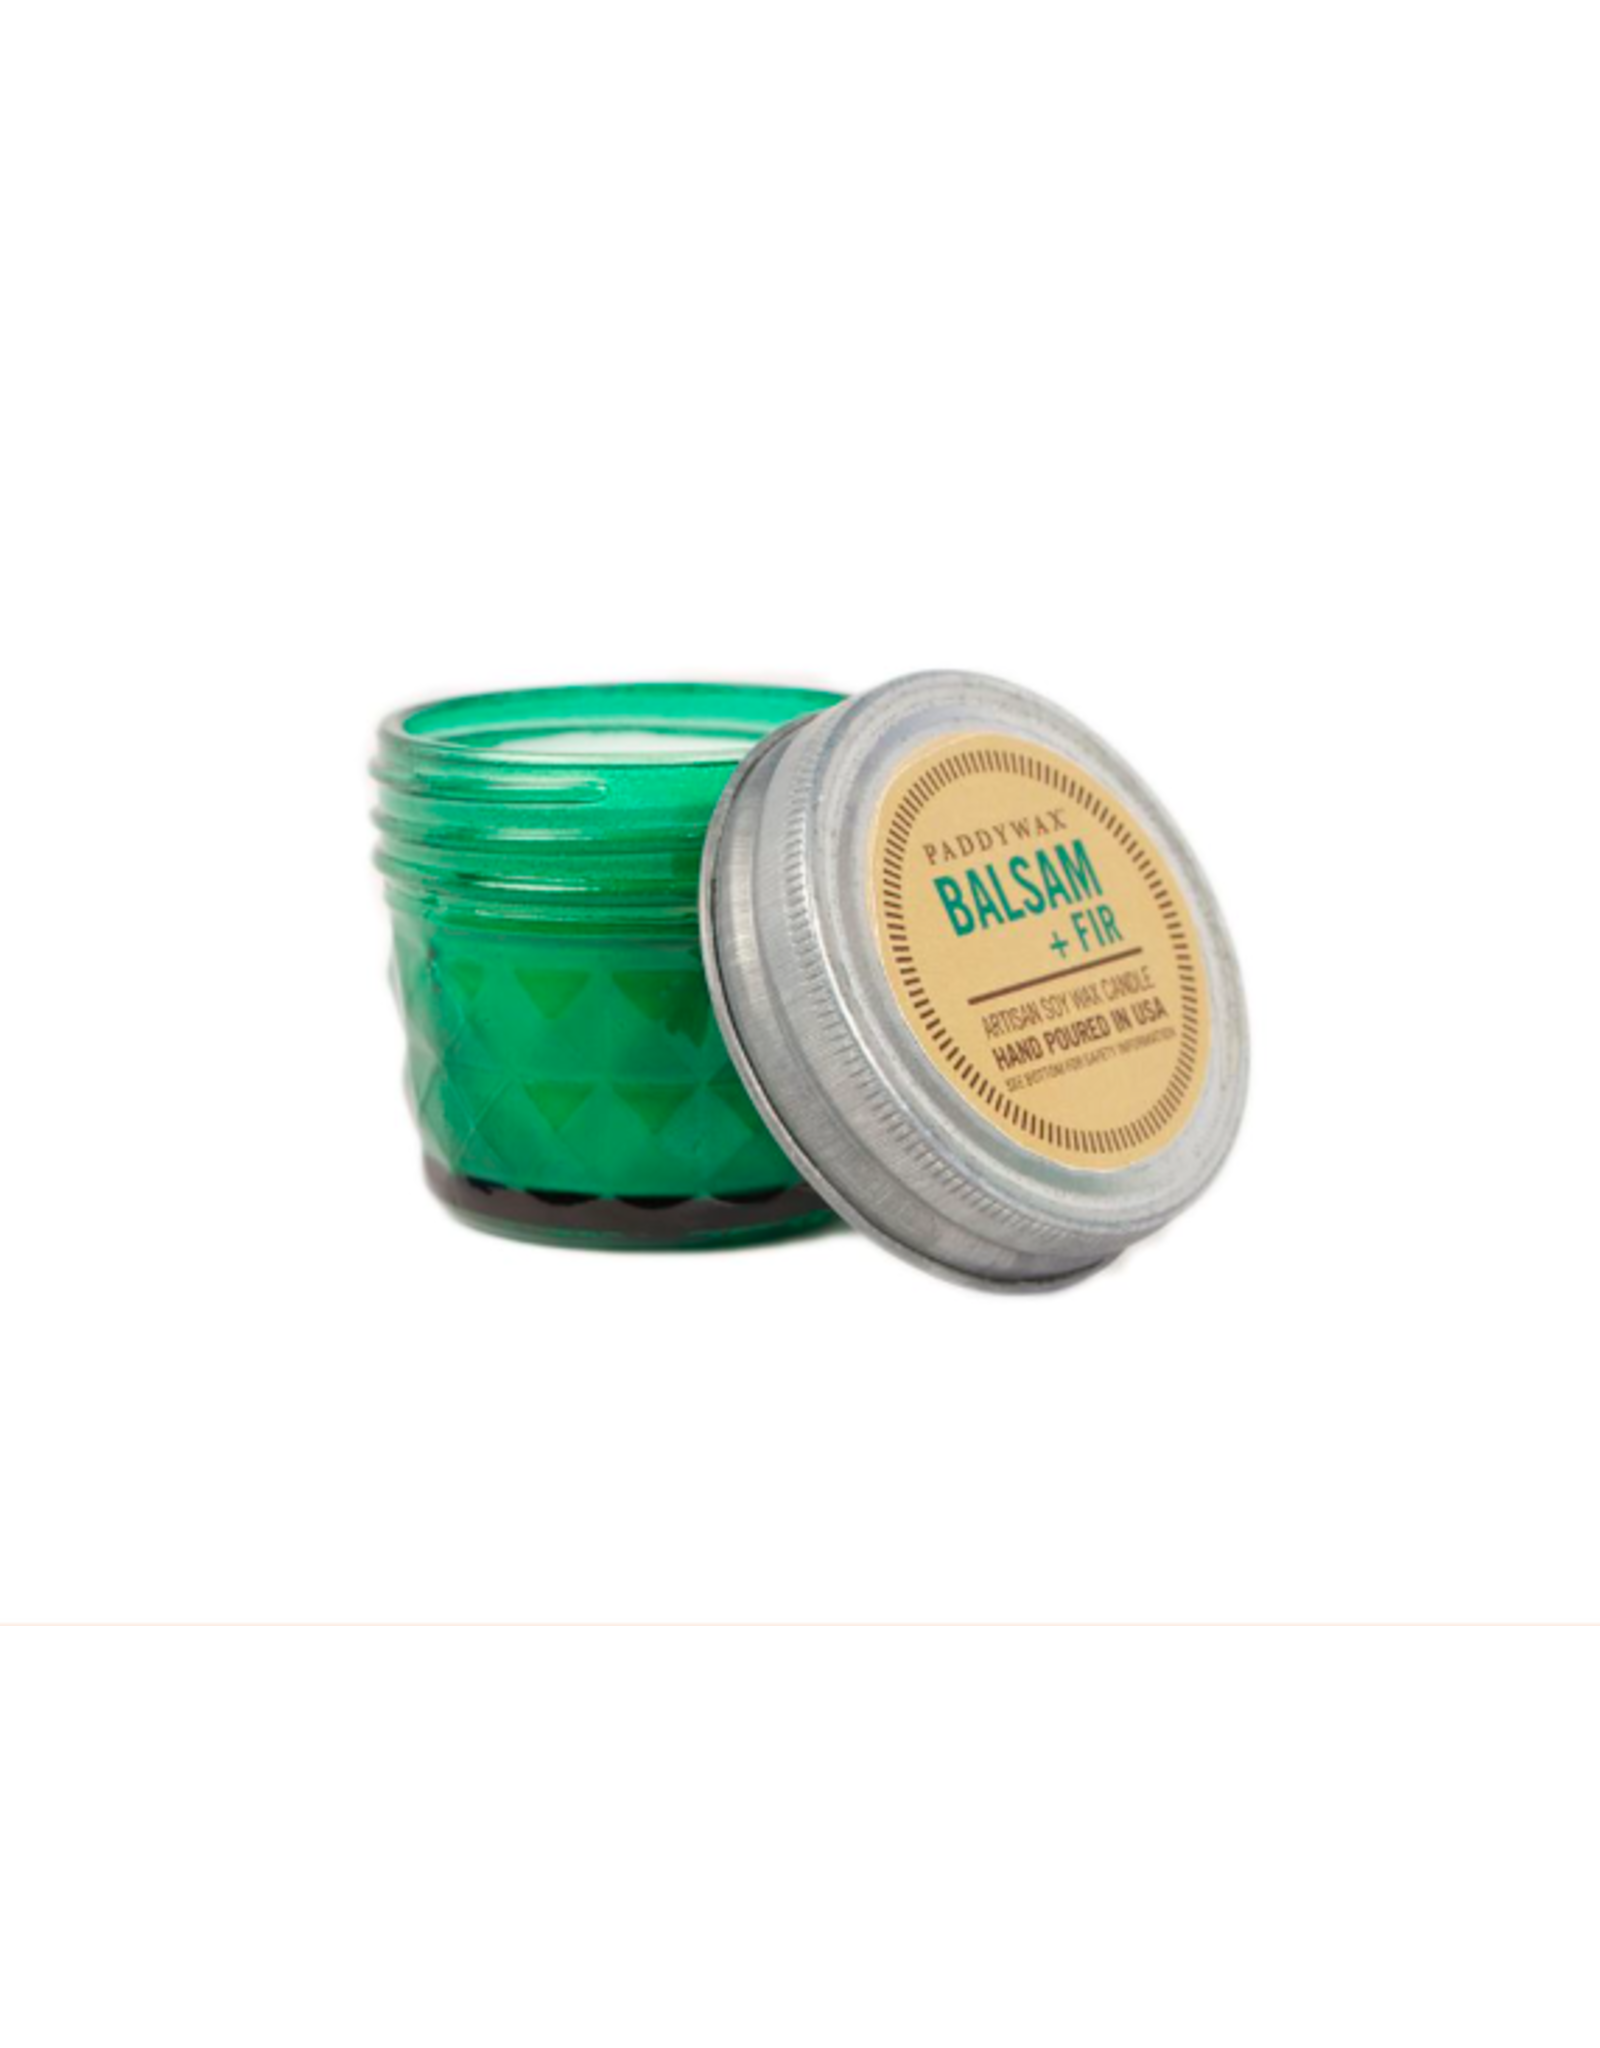 Emerald Green Balsam Fir Jar 3oz